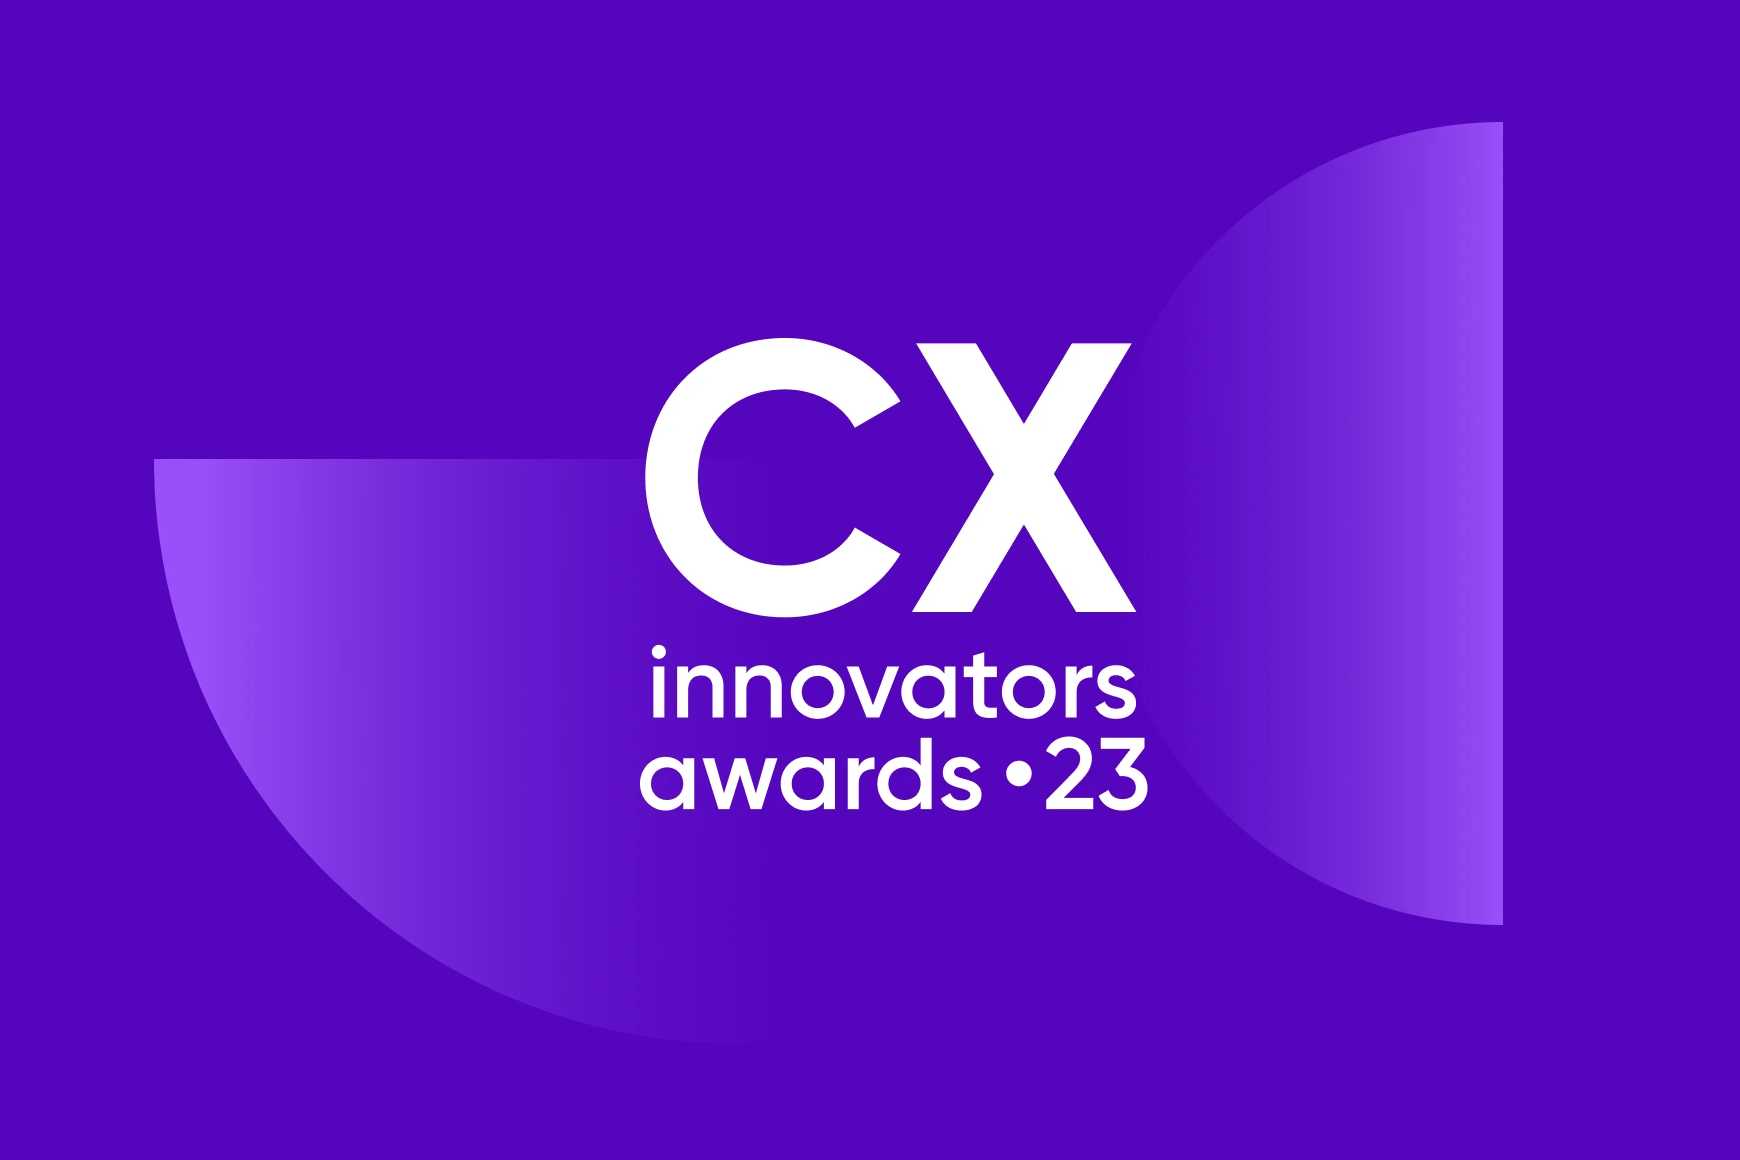 Talkdesk CX Innovators awards: 4 tips for customer experience innovation